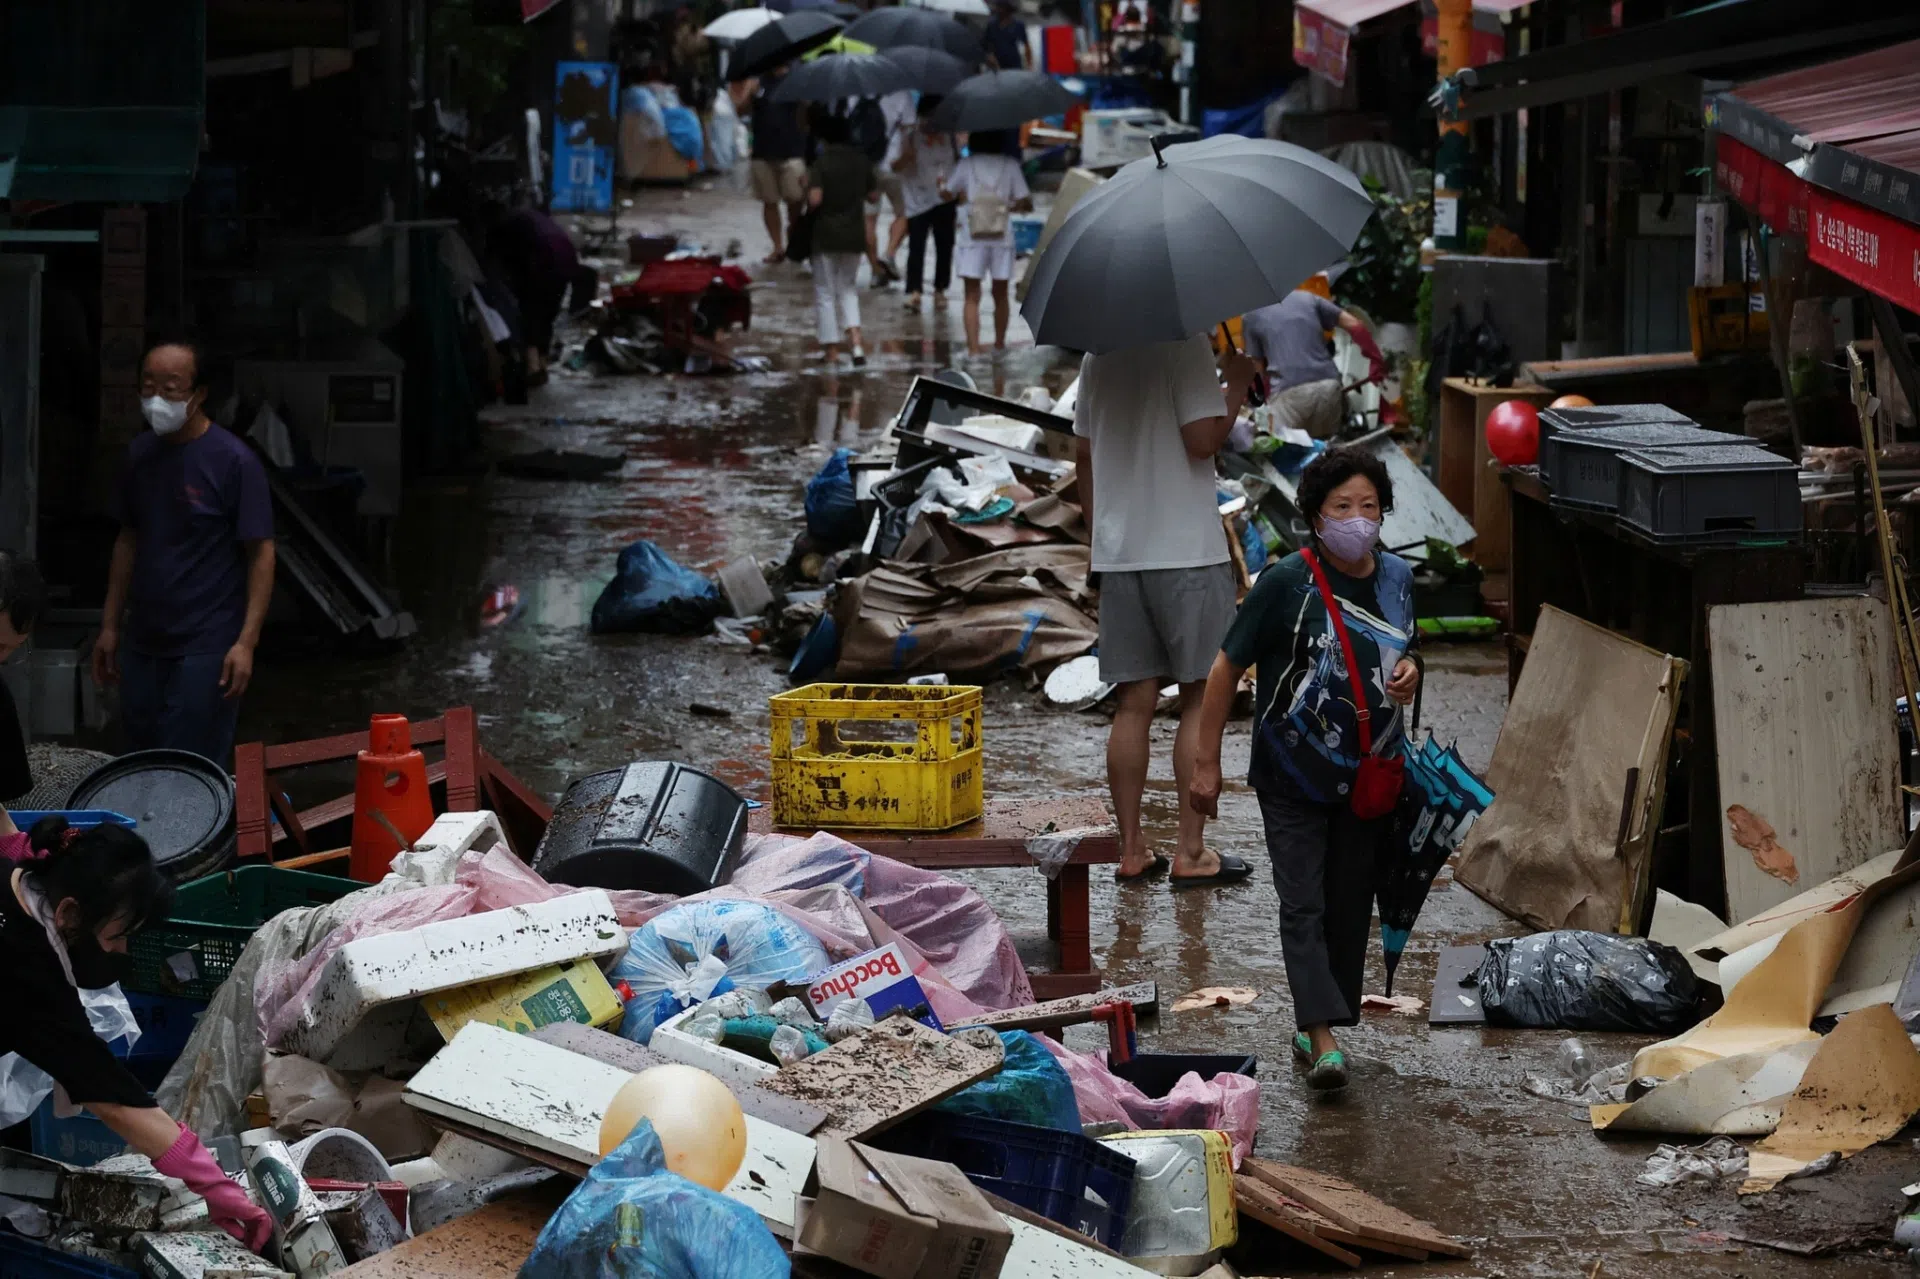 Chùm ảnh: Xót xa loạt xe sang ‘tan tác’ trên phố Seoul như bãi sắt vụn, còn lại gì sau thảm họa?